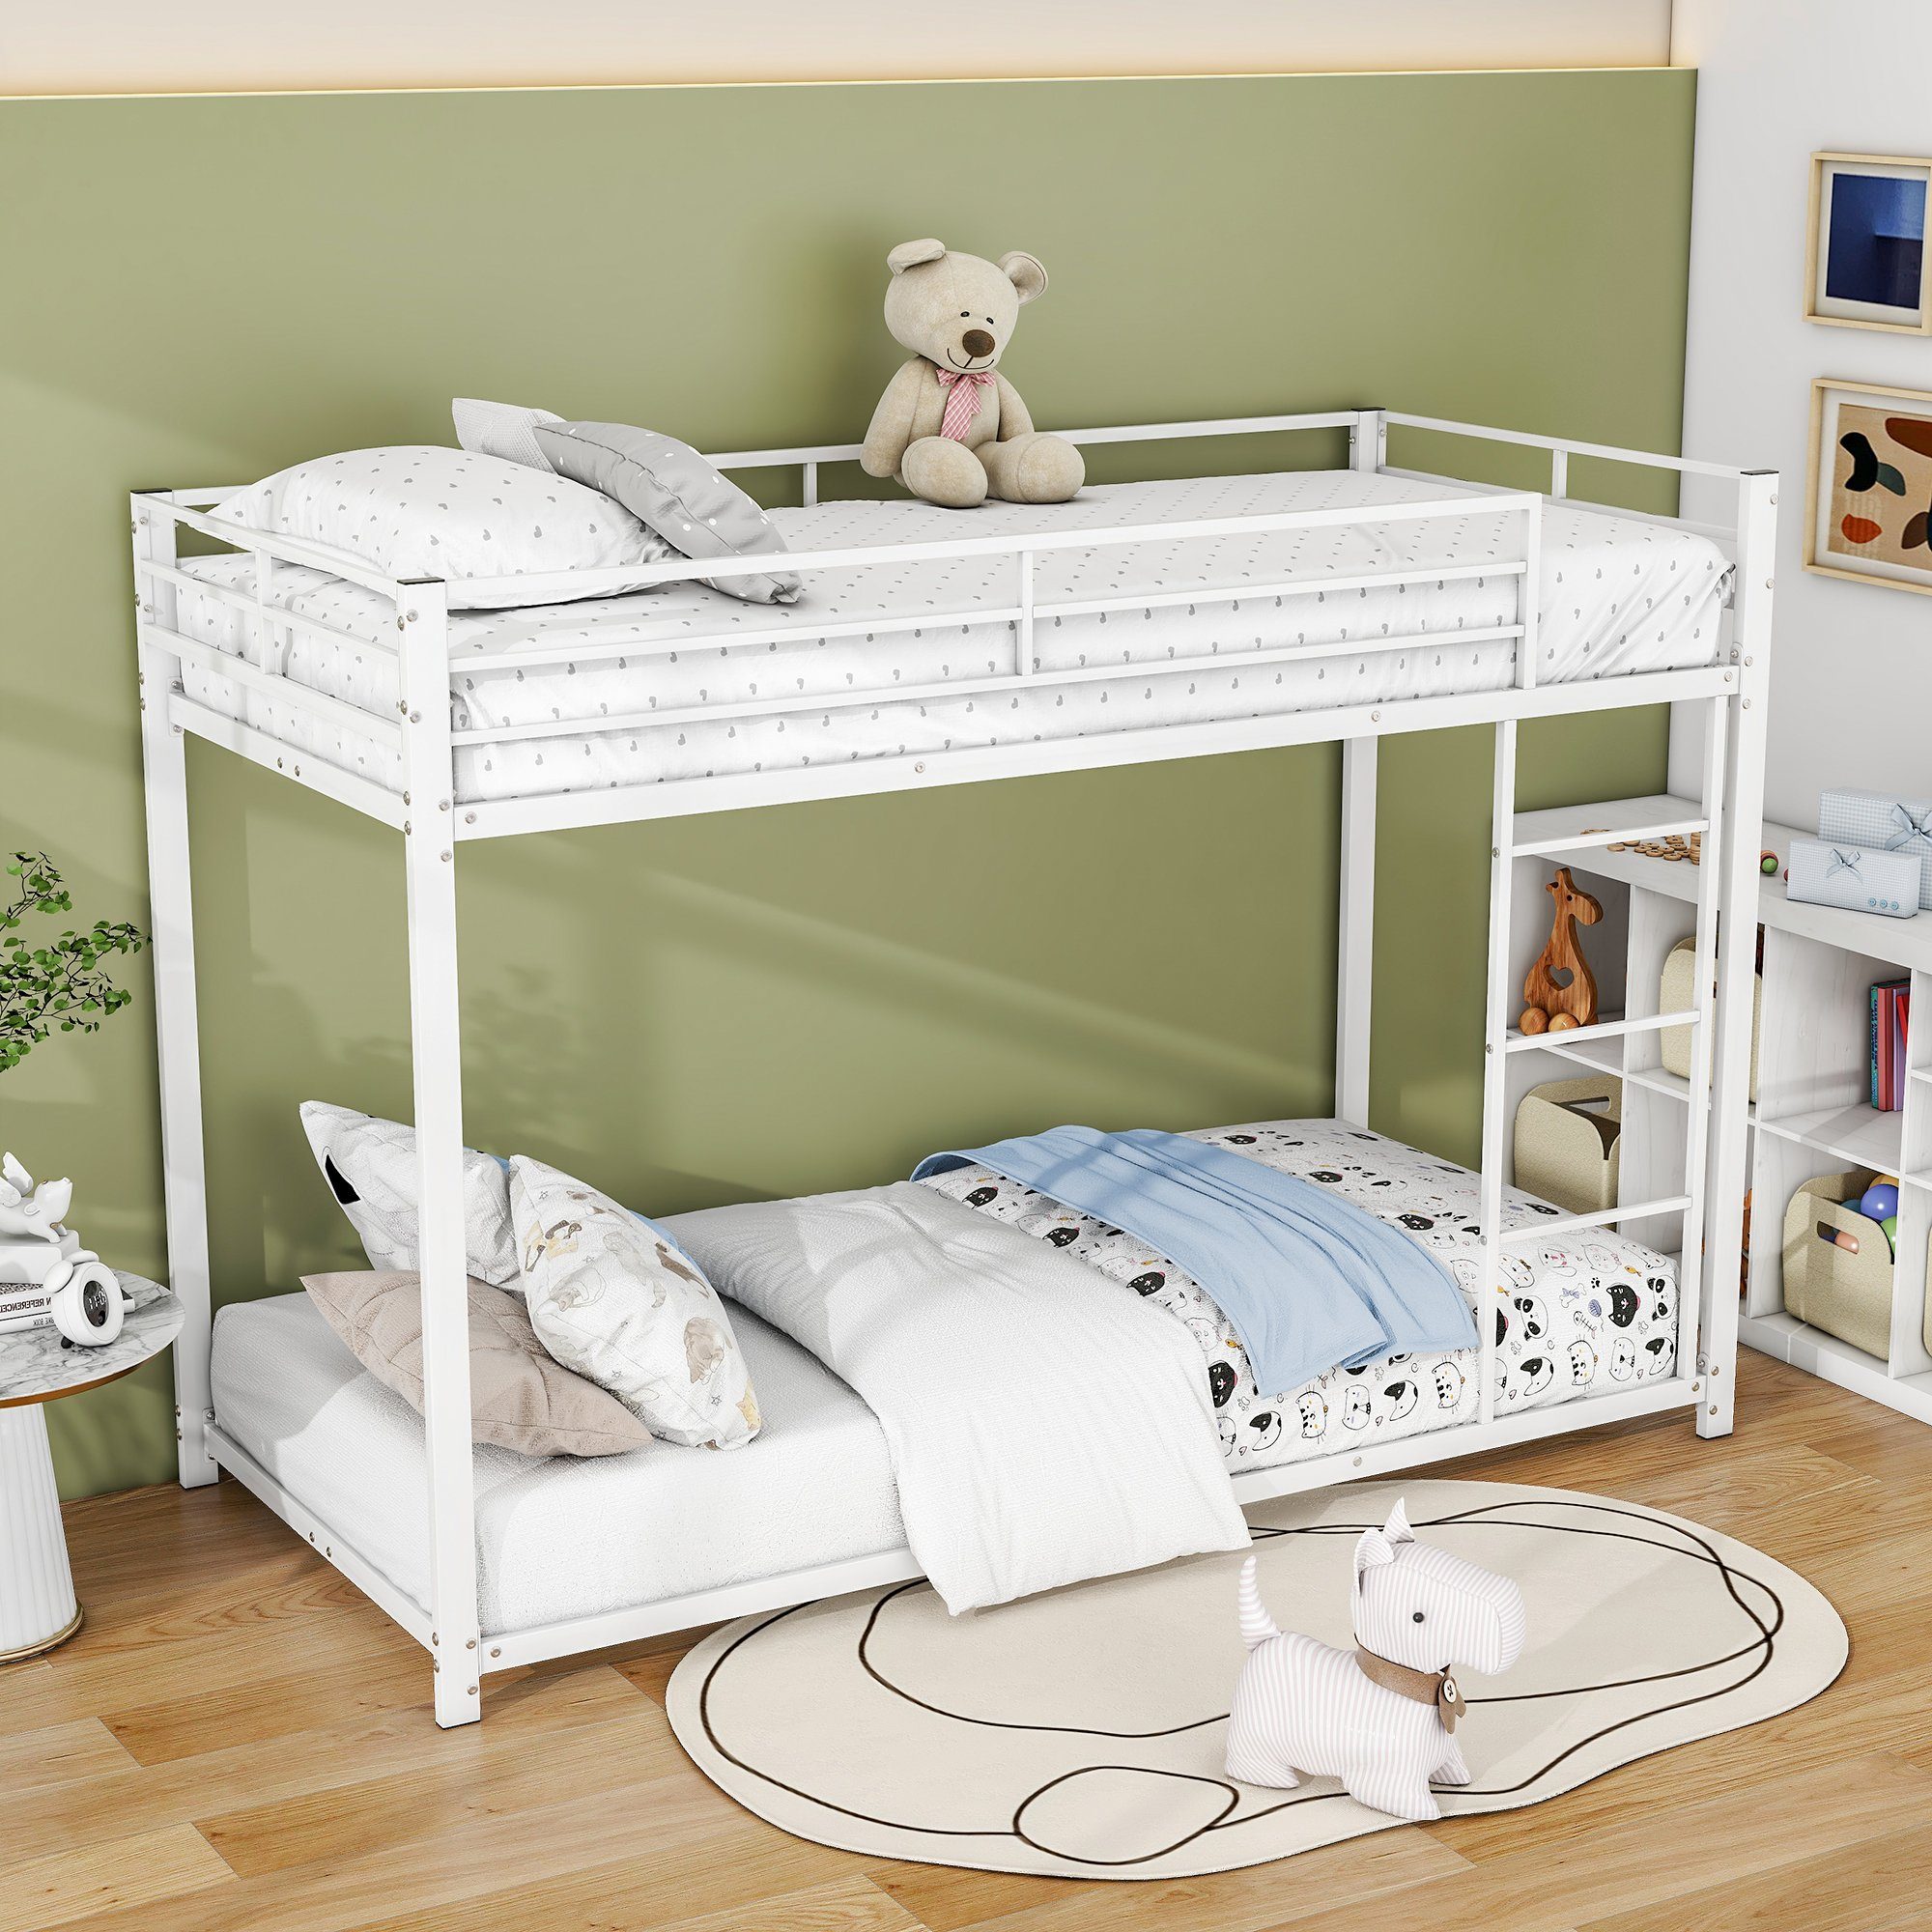 OKWISH Etagenbett Kinderbetten Eisenbetten Funktionsbett Bett (90*200 cm, Eisenetagenbetten in klassischer Form), ohne Matratze weiß